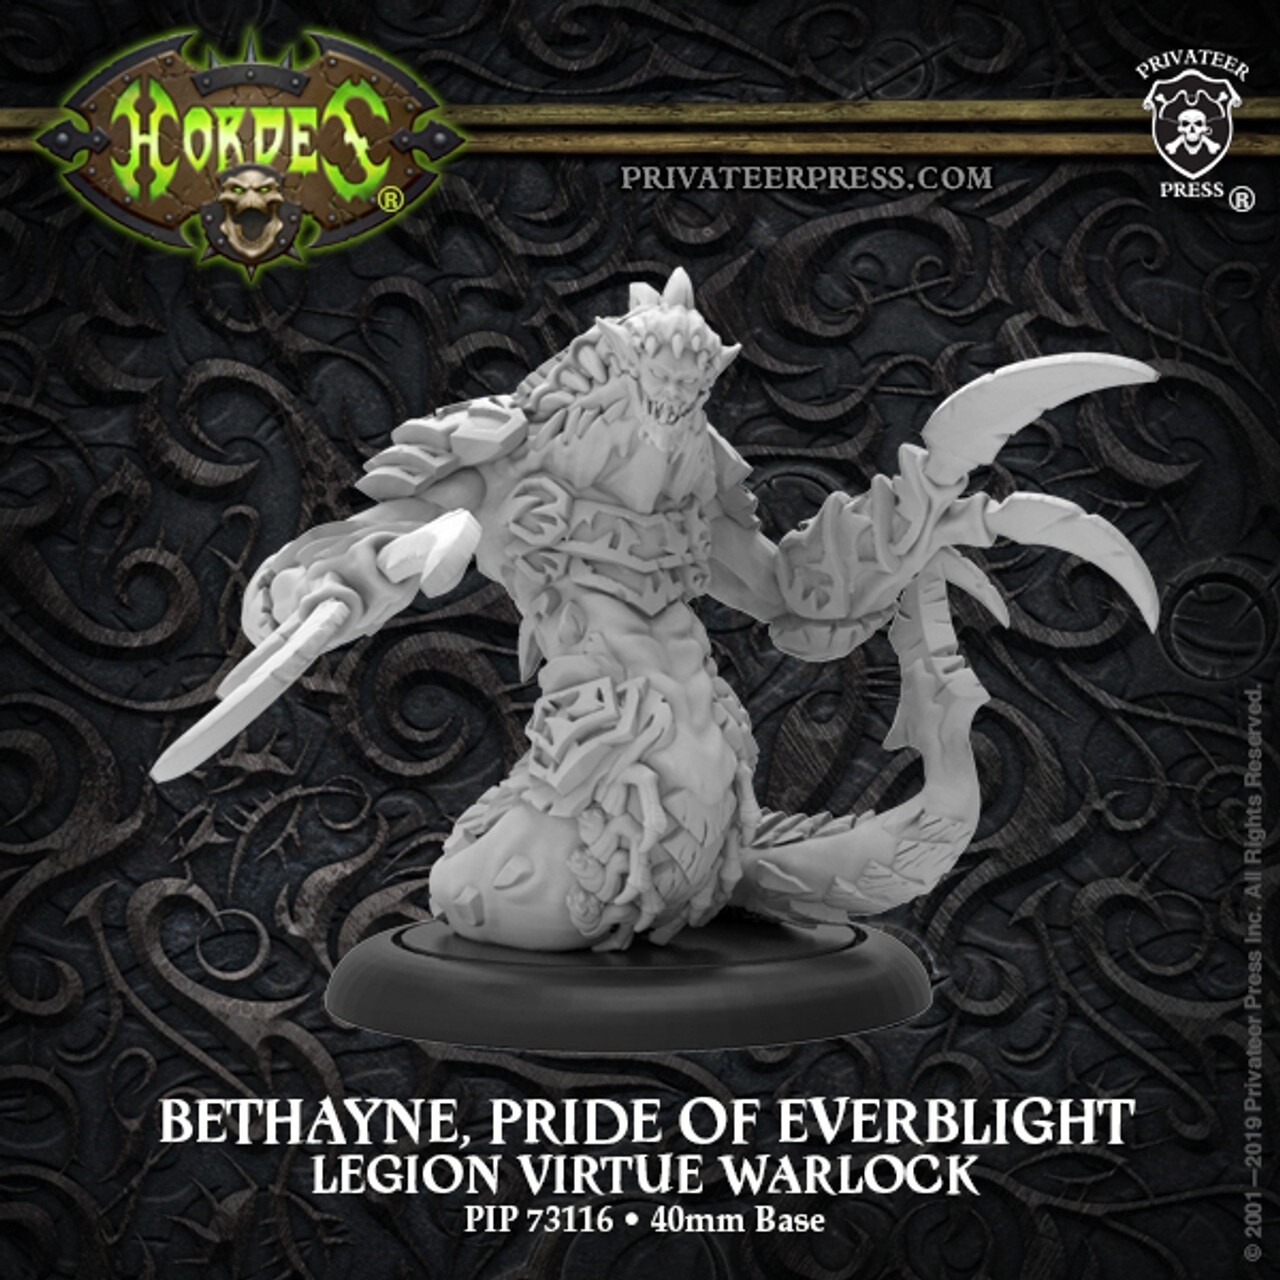 Hordes: Legion Warlock: Bethayne, Pride of Everblight